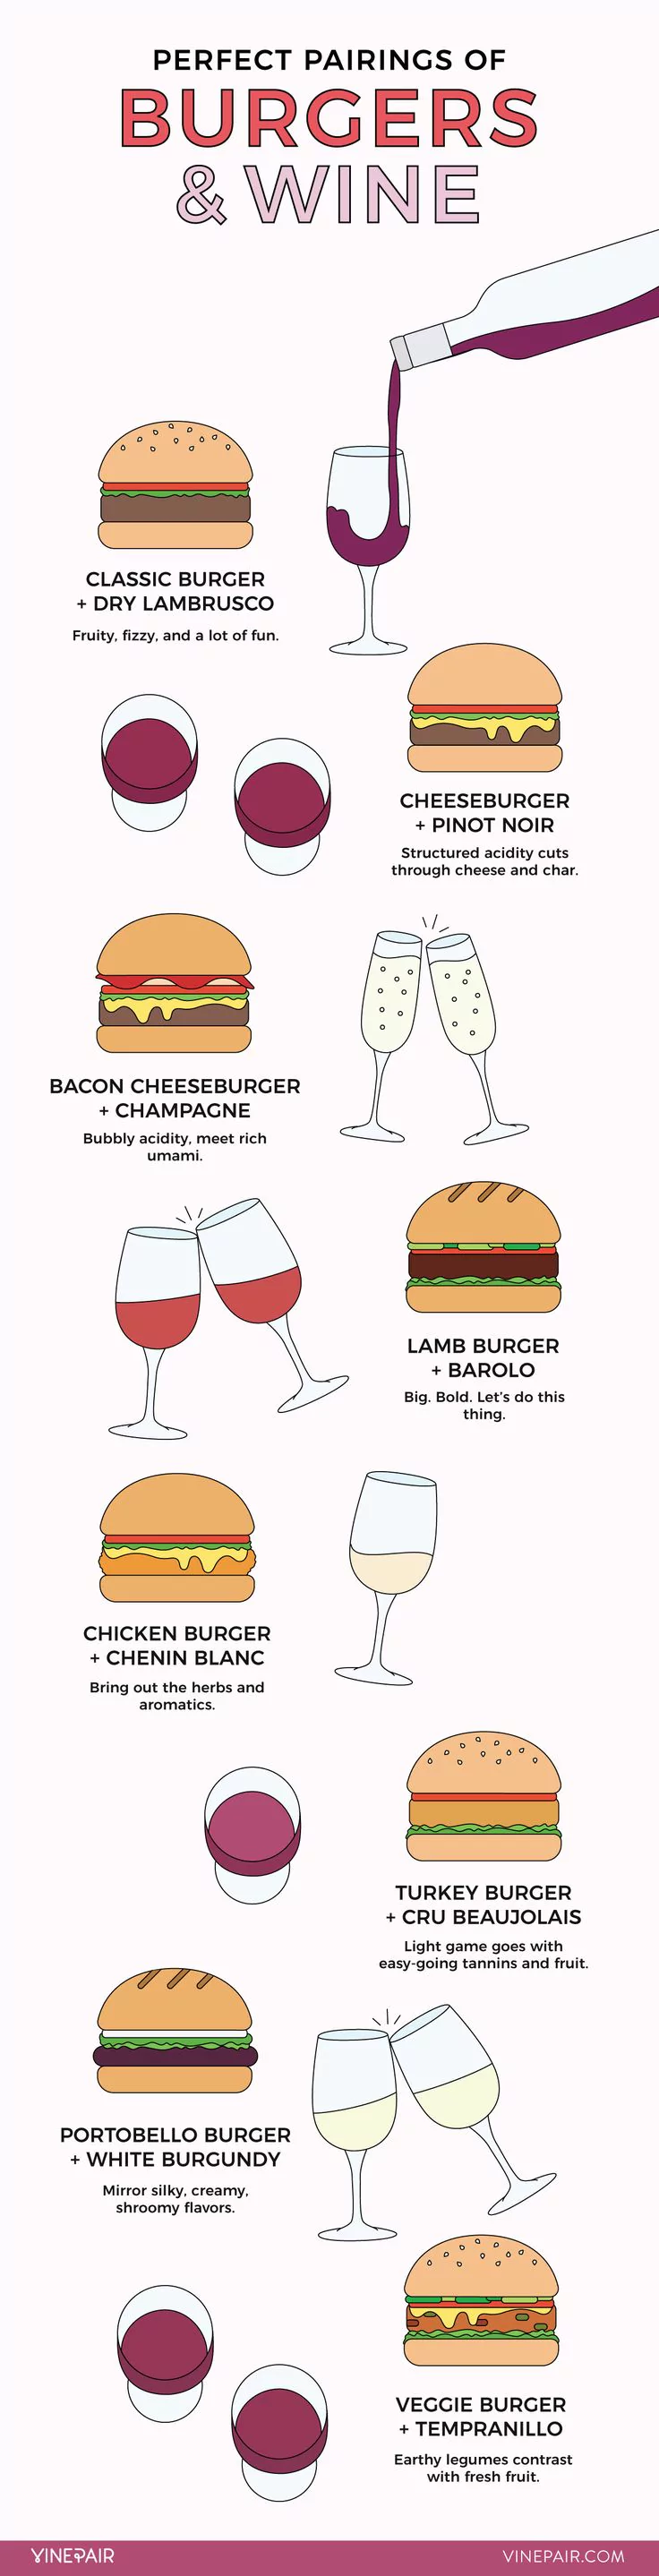 Wine and Burger Pairing